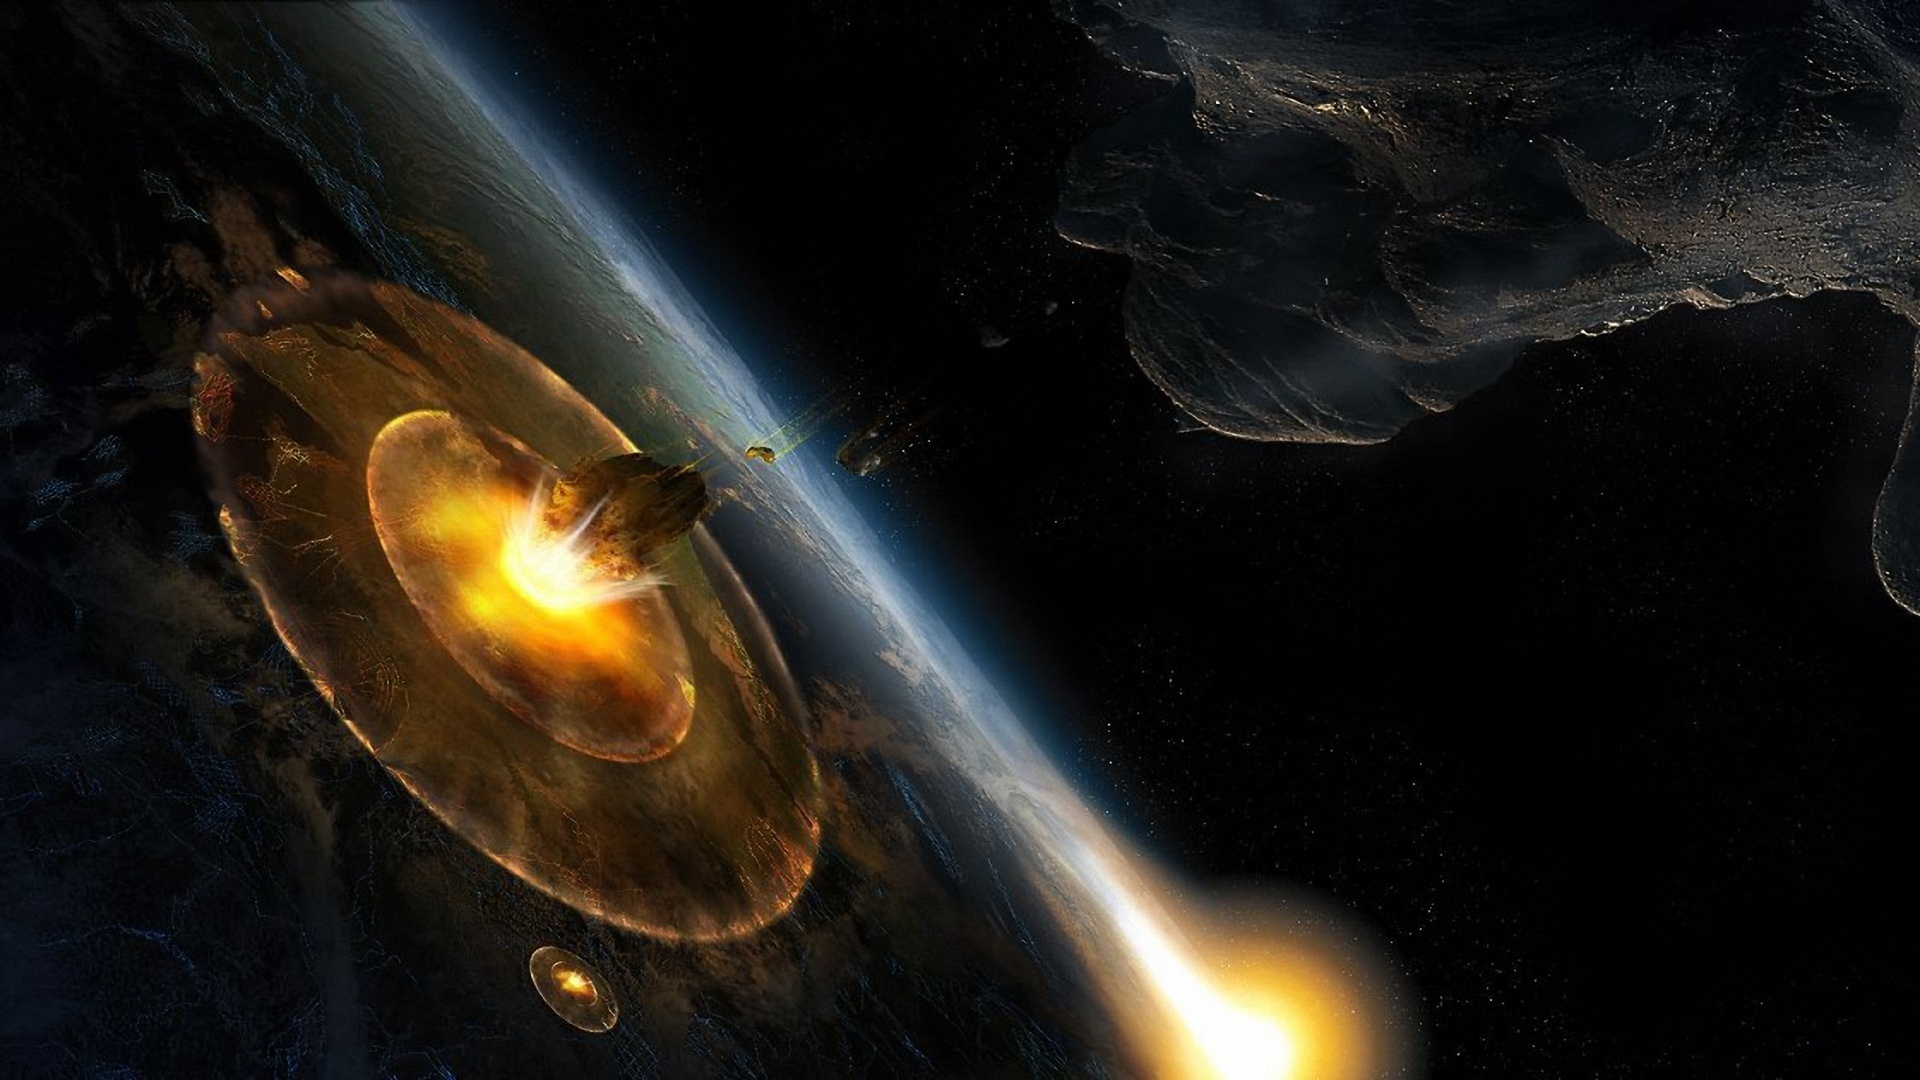 Обои Взрывающаяся планета картинки на рабочий стол на тему Космос - скачать бесплатно